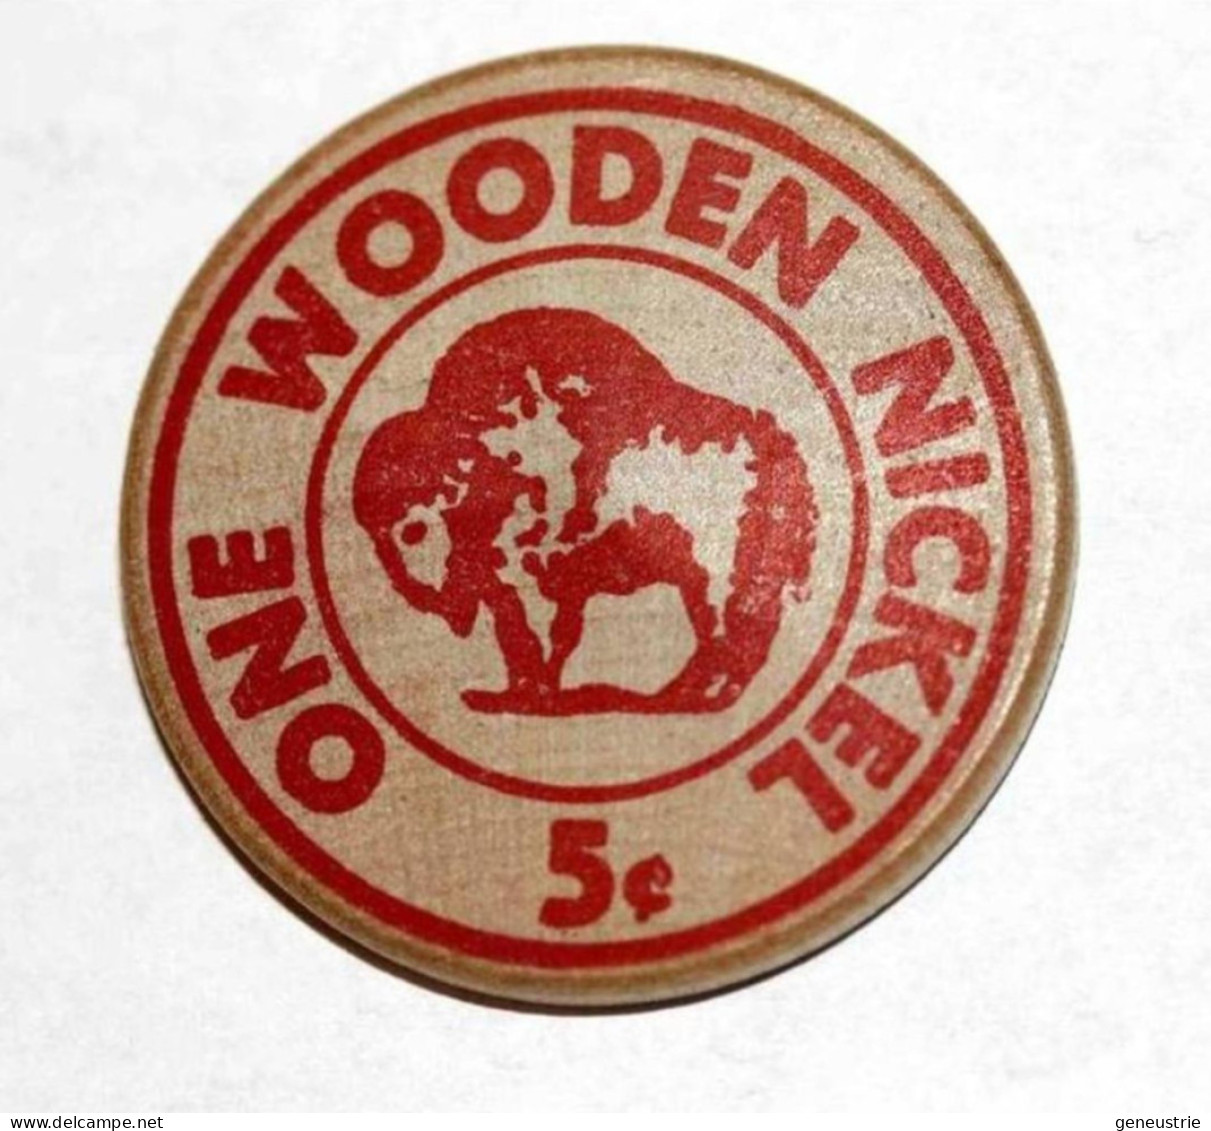 Rare Wooden Token 3c - Wooden Nickel - Jeton Bois Monnaie Nécessité 5 Cents - Bison - Coca-Cola - Etats-Unis - Monétaires/De Nécessité